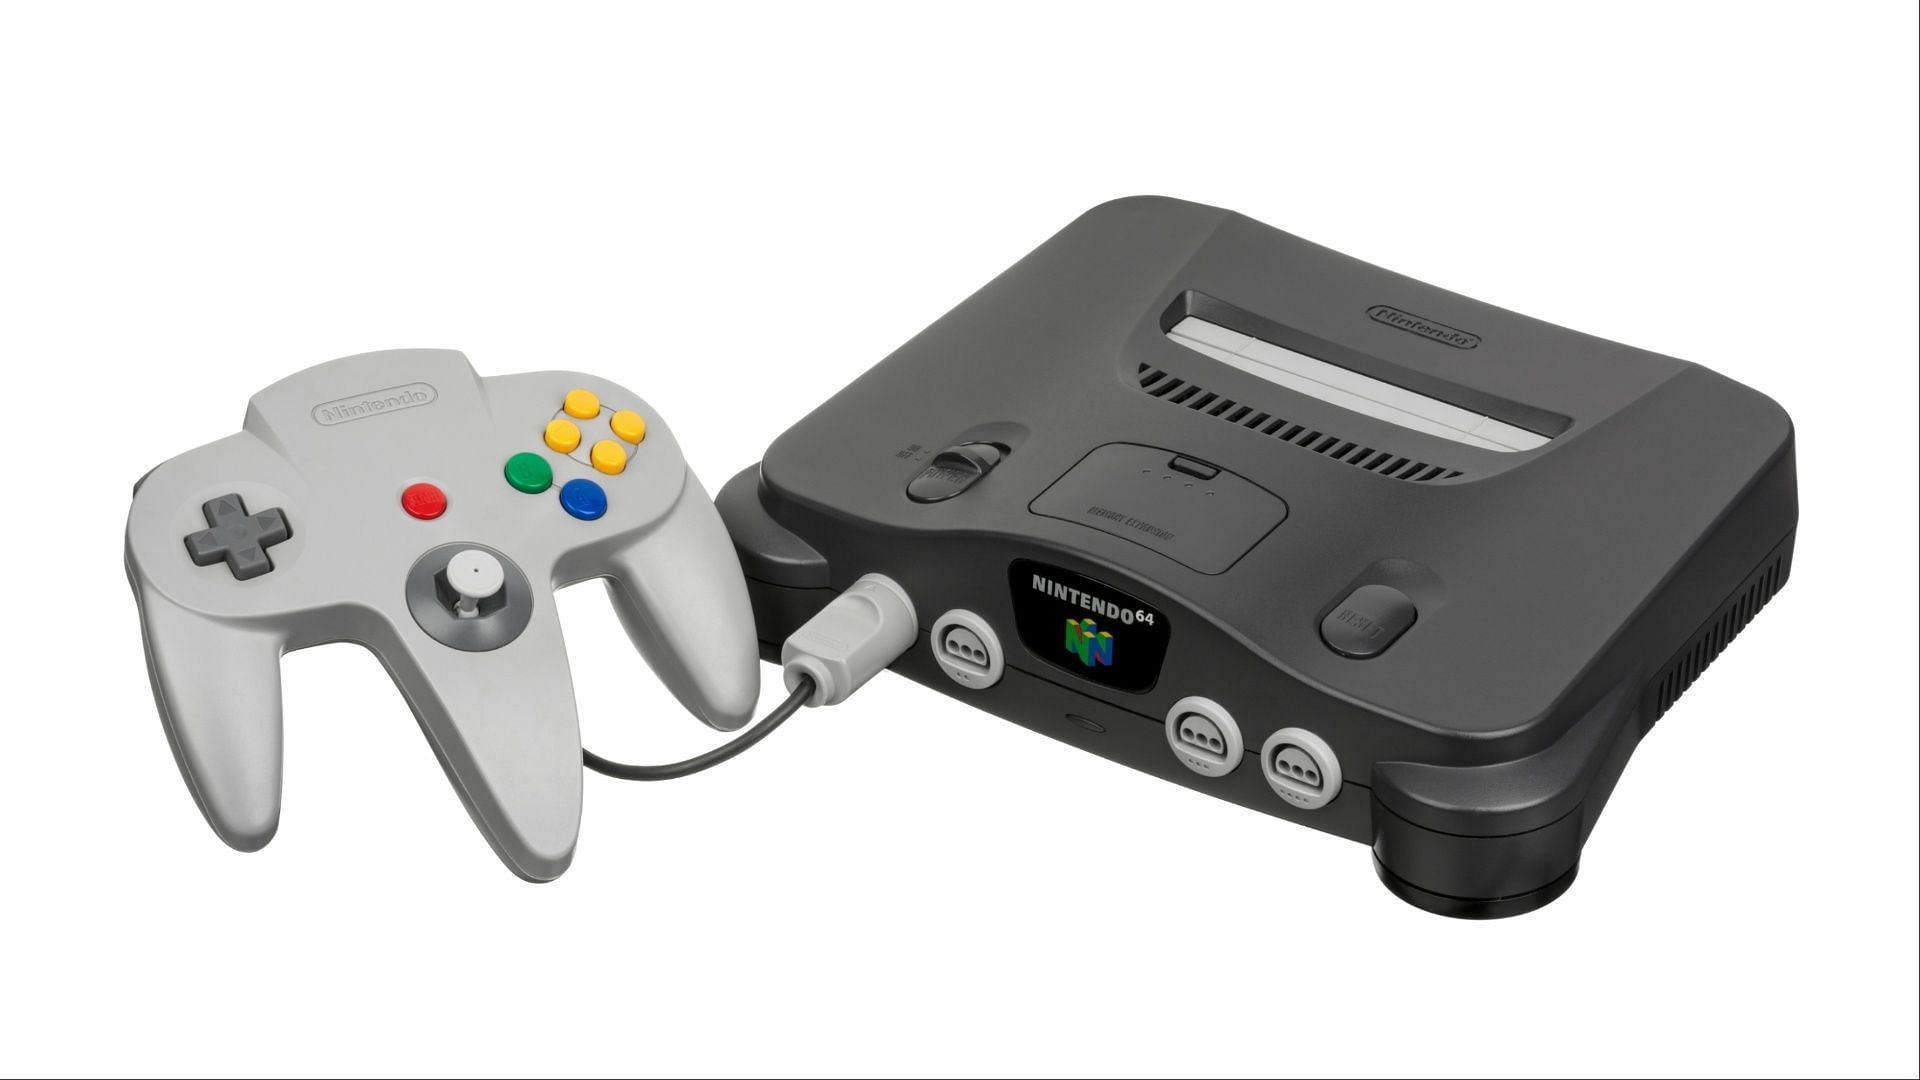 Nintendo 64 (Image via Nintendo)